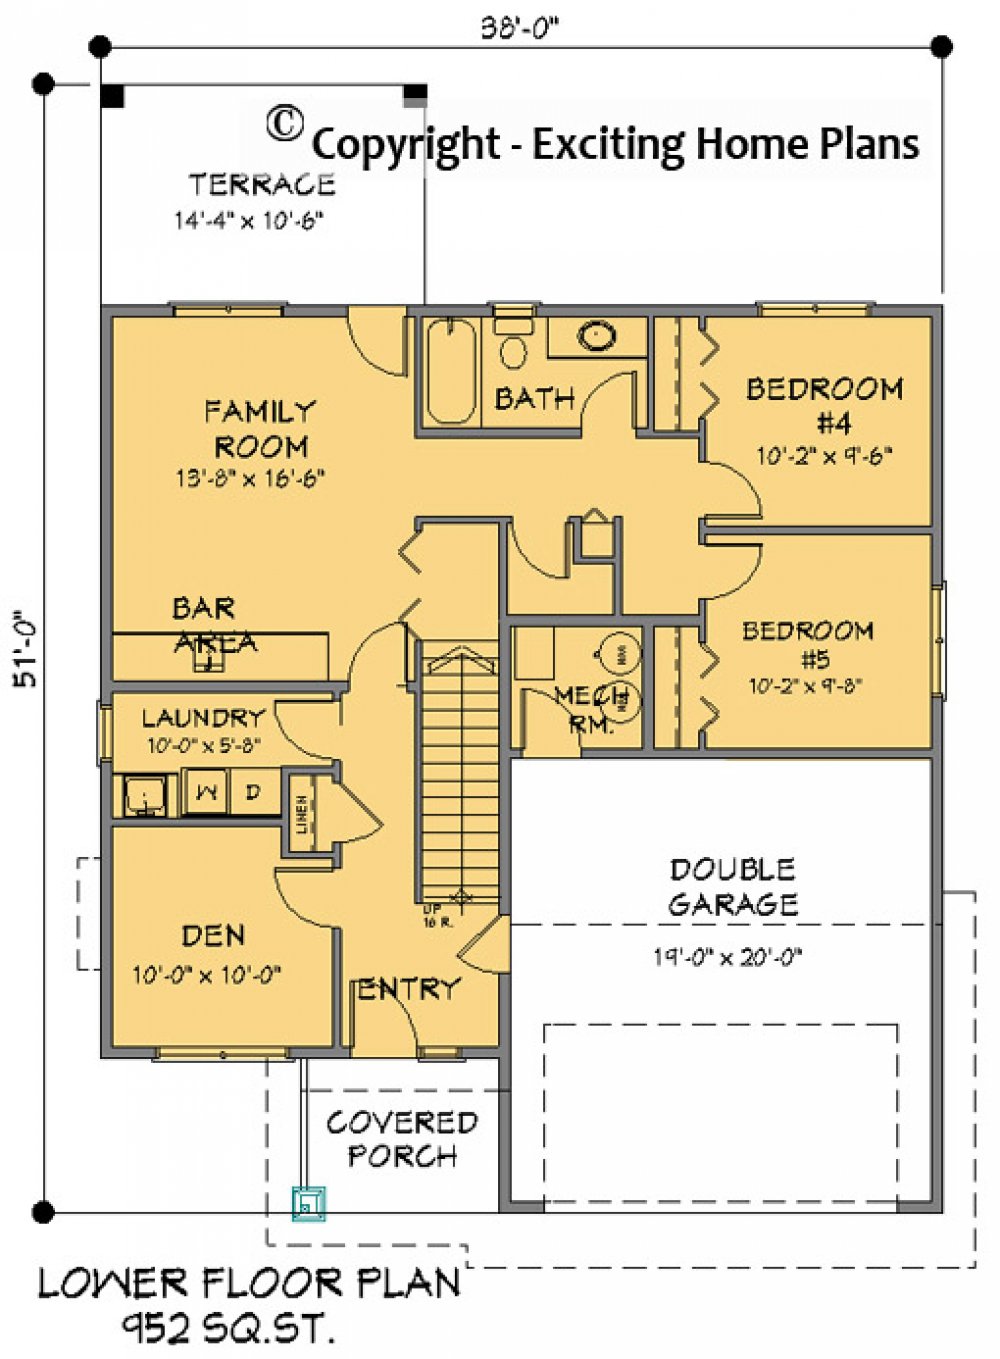 House Plan E1138-11 Lower Floor Plan